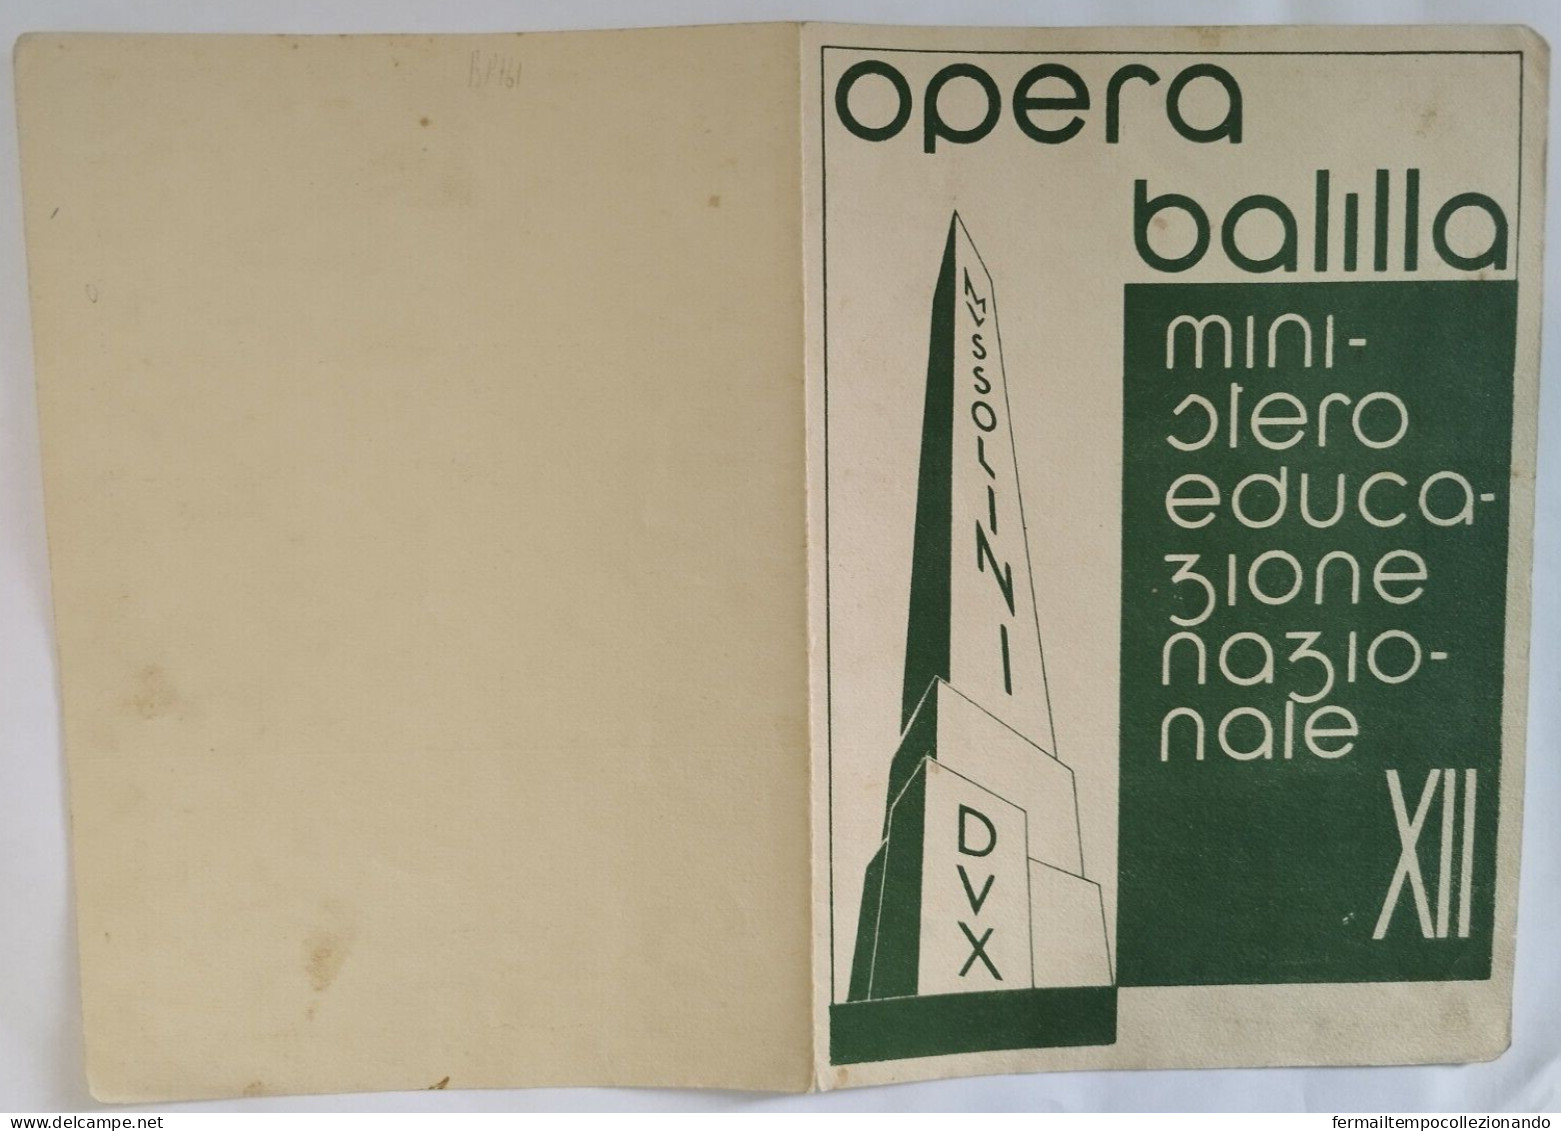 Bp161 Pagella Fascista Regno D'italia Opera Balilla Tizzano Parma 1934 - Diplomi E Pagelle